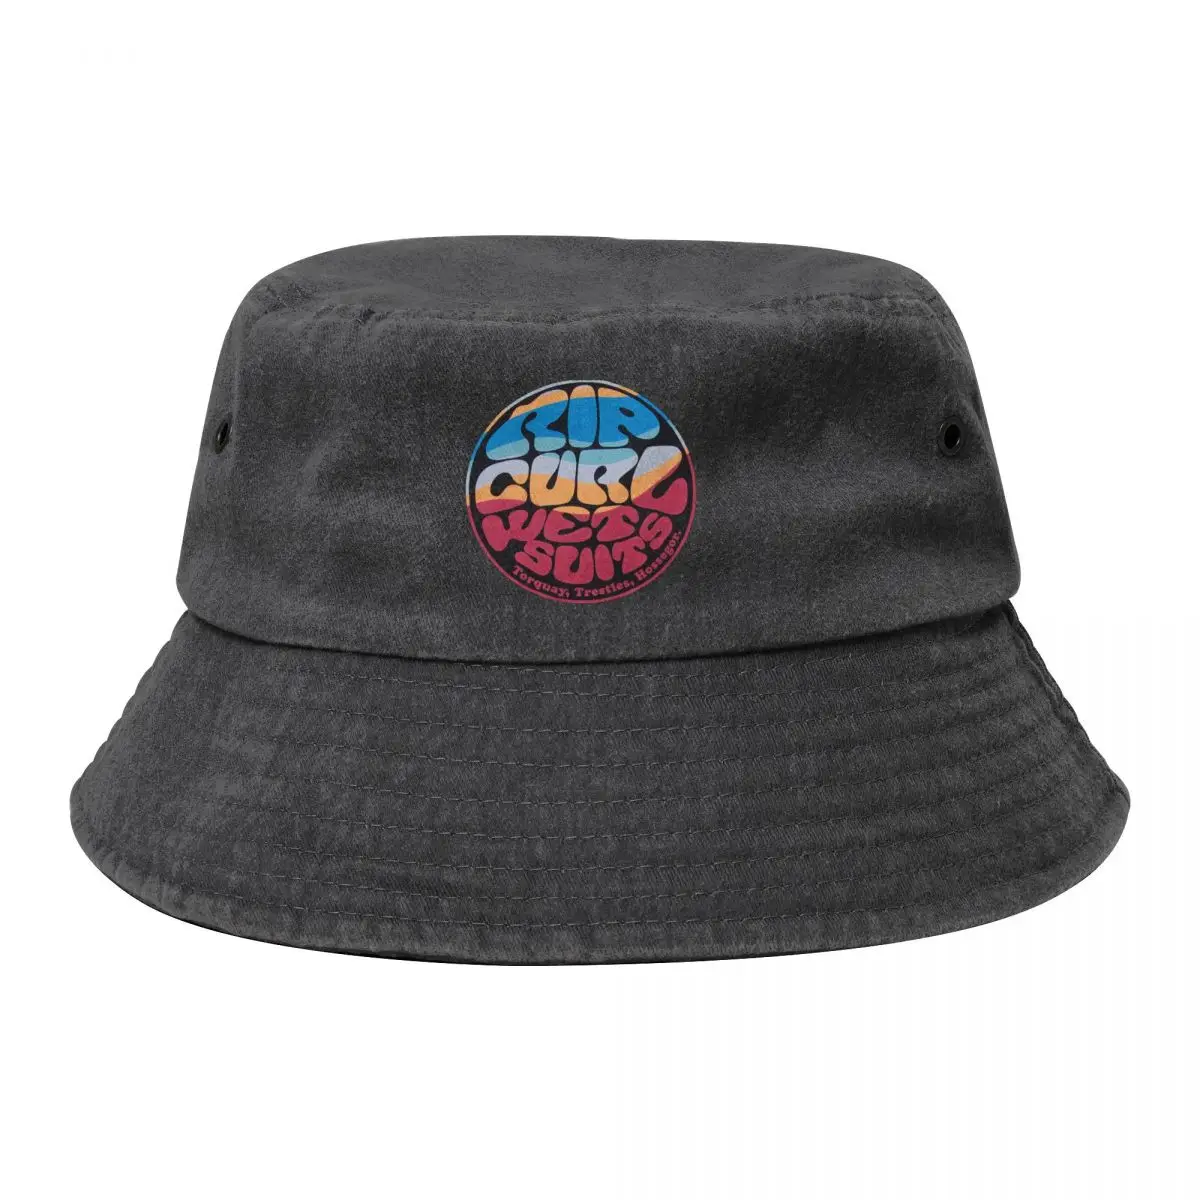 

Vocation Getaway Headwear Rip Curl Merch Cotton Denim Bucket Hat Street Unisex Summer Surfing Fisherman Hat For Outdoor